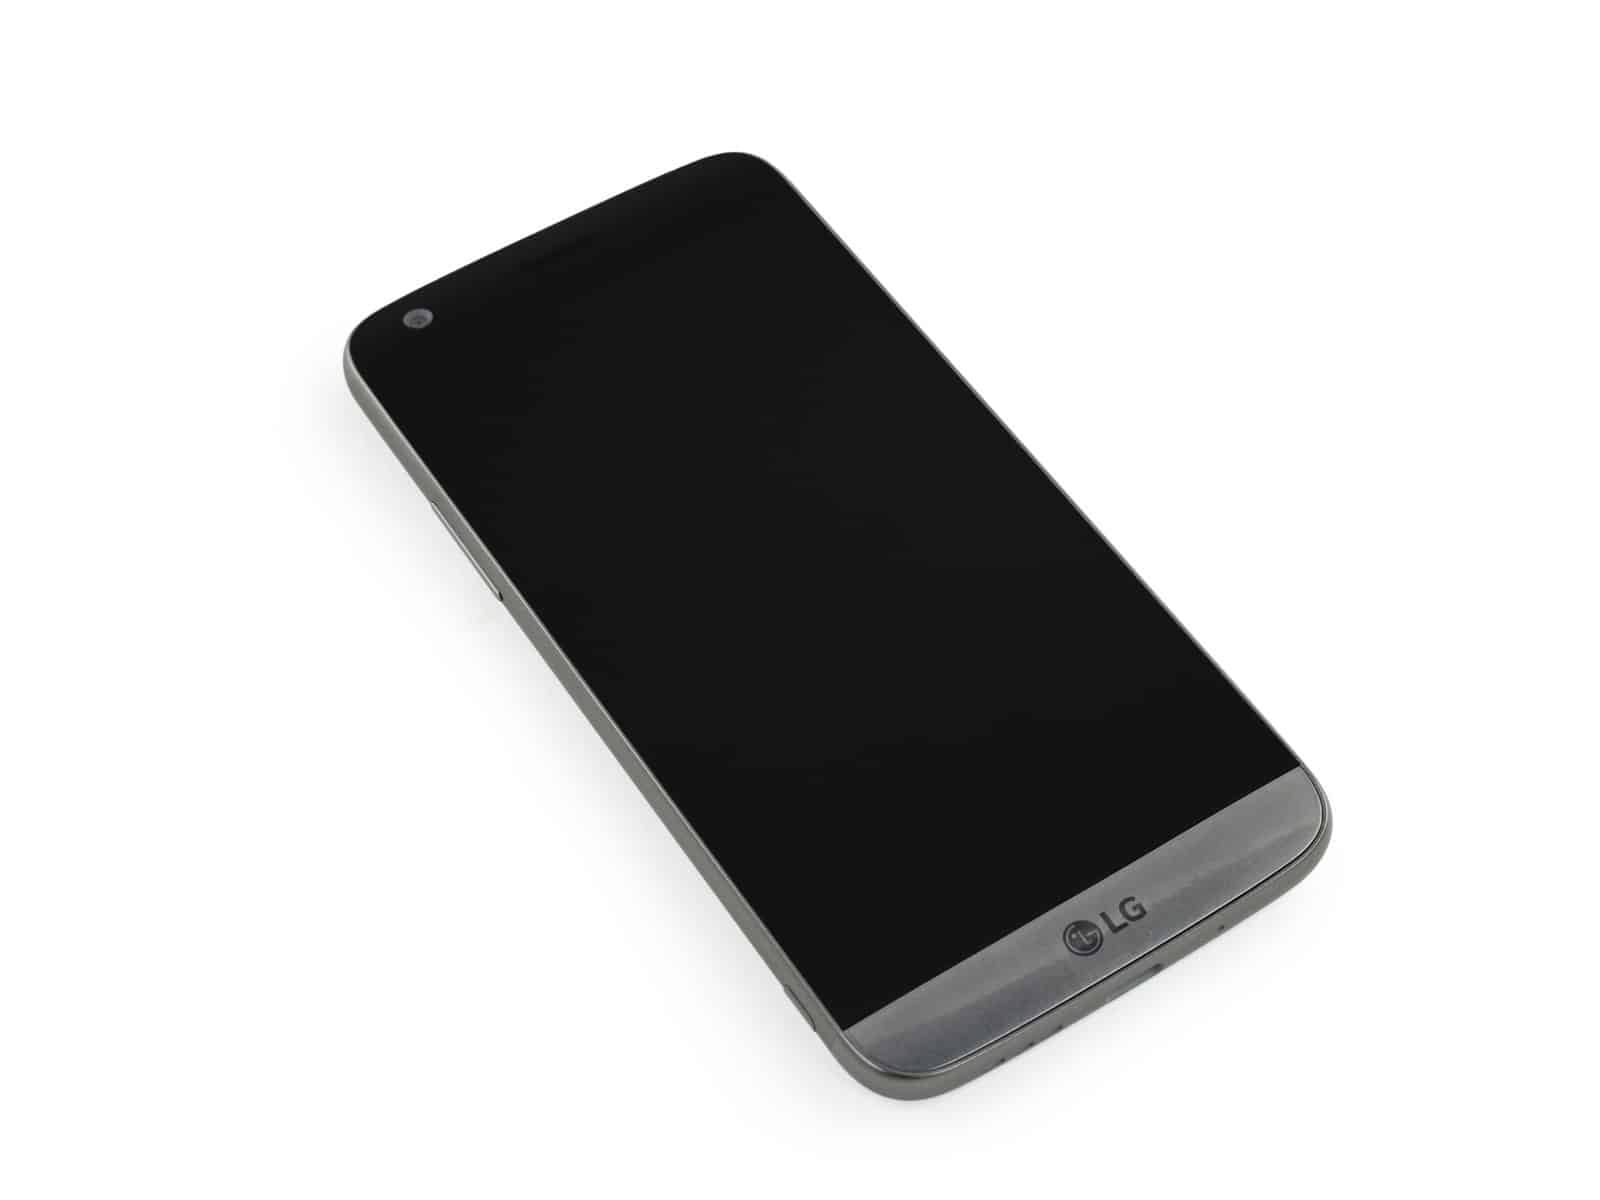 LG G6 vs Xiaomi Mi 6 Mix